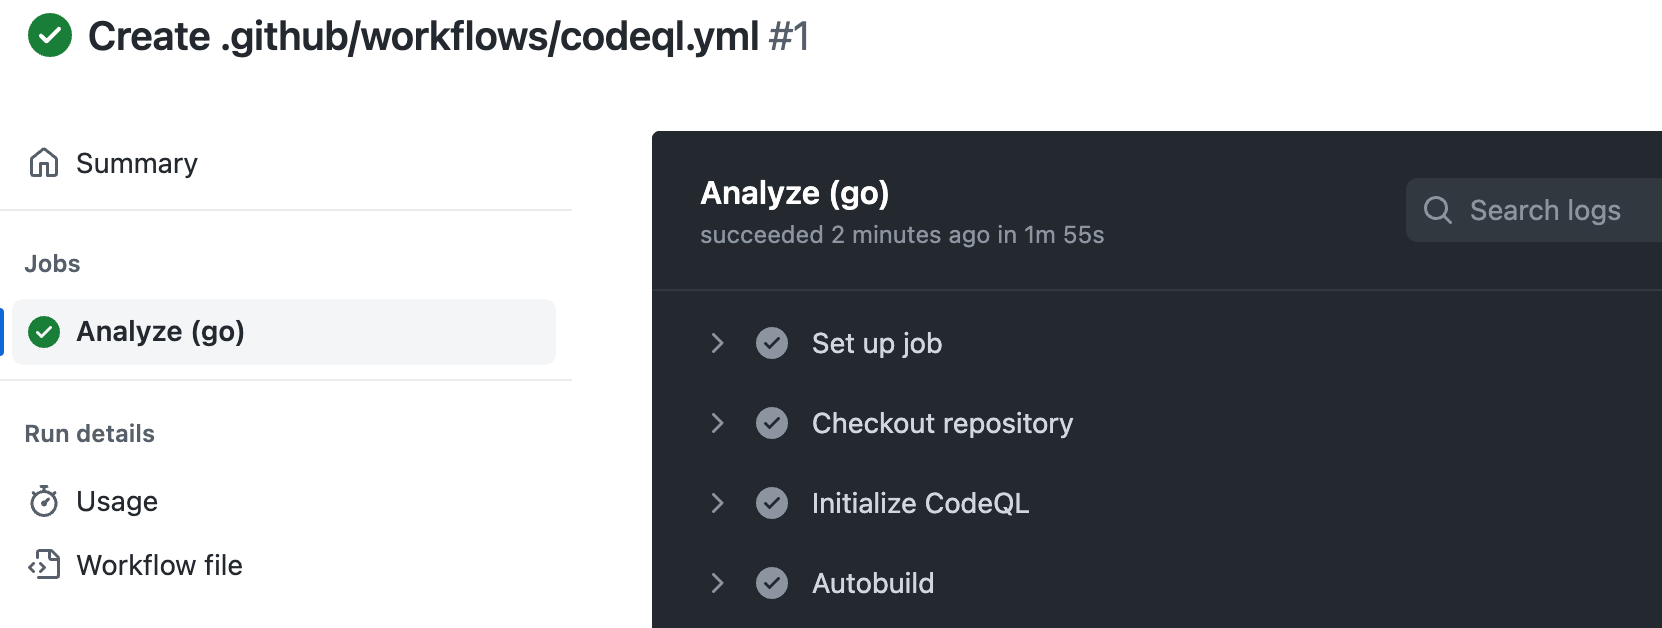 Captura de pantalla de la salida del registro para el trabajo "Analizar (Go)". En la barra lateral izquierda, bajo el encabezado "Trabajos", aparece "Analizar (Go)".